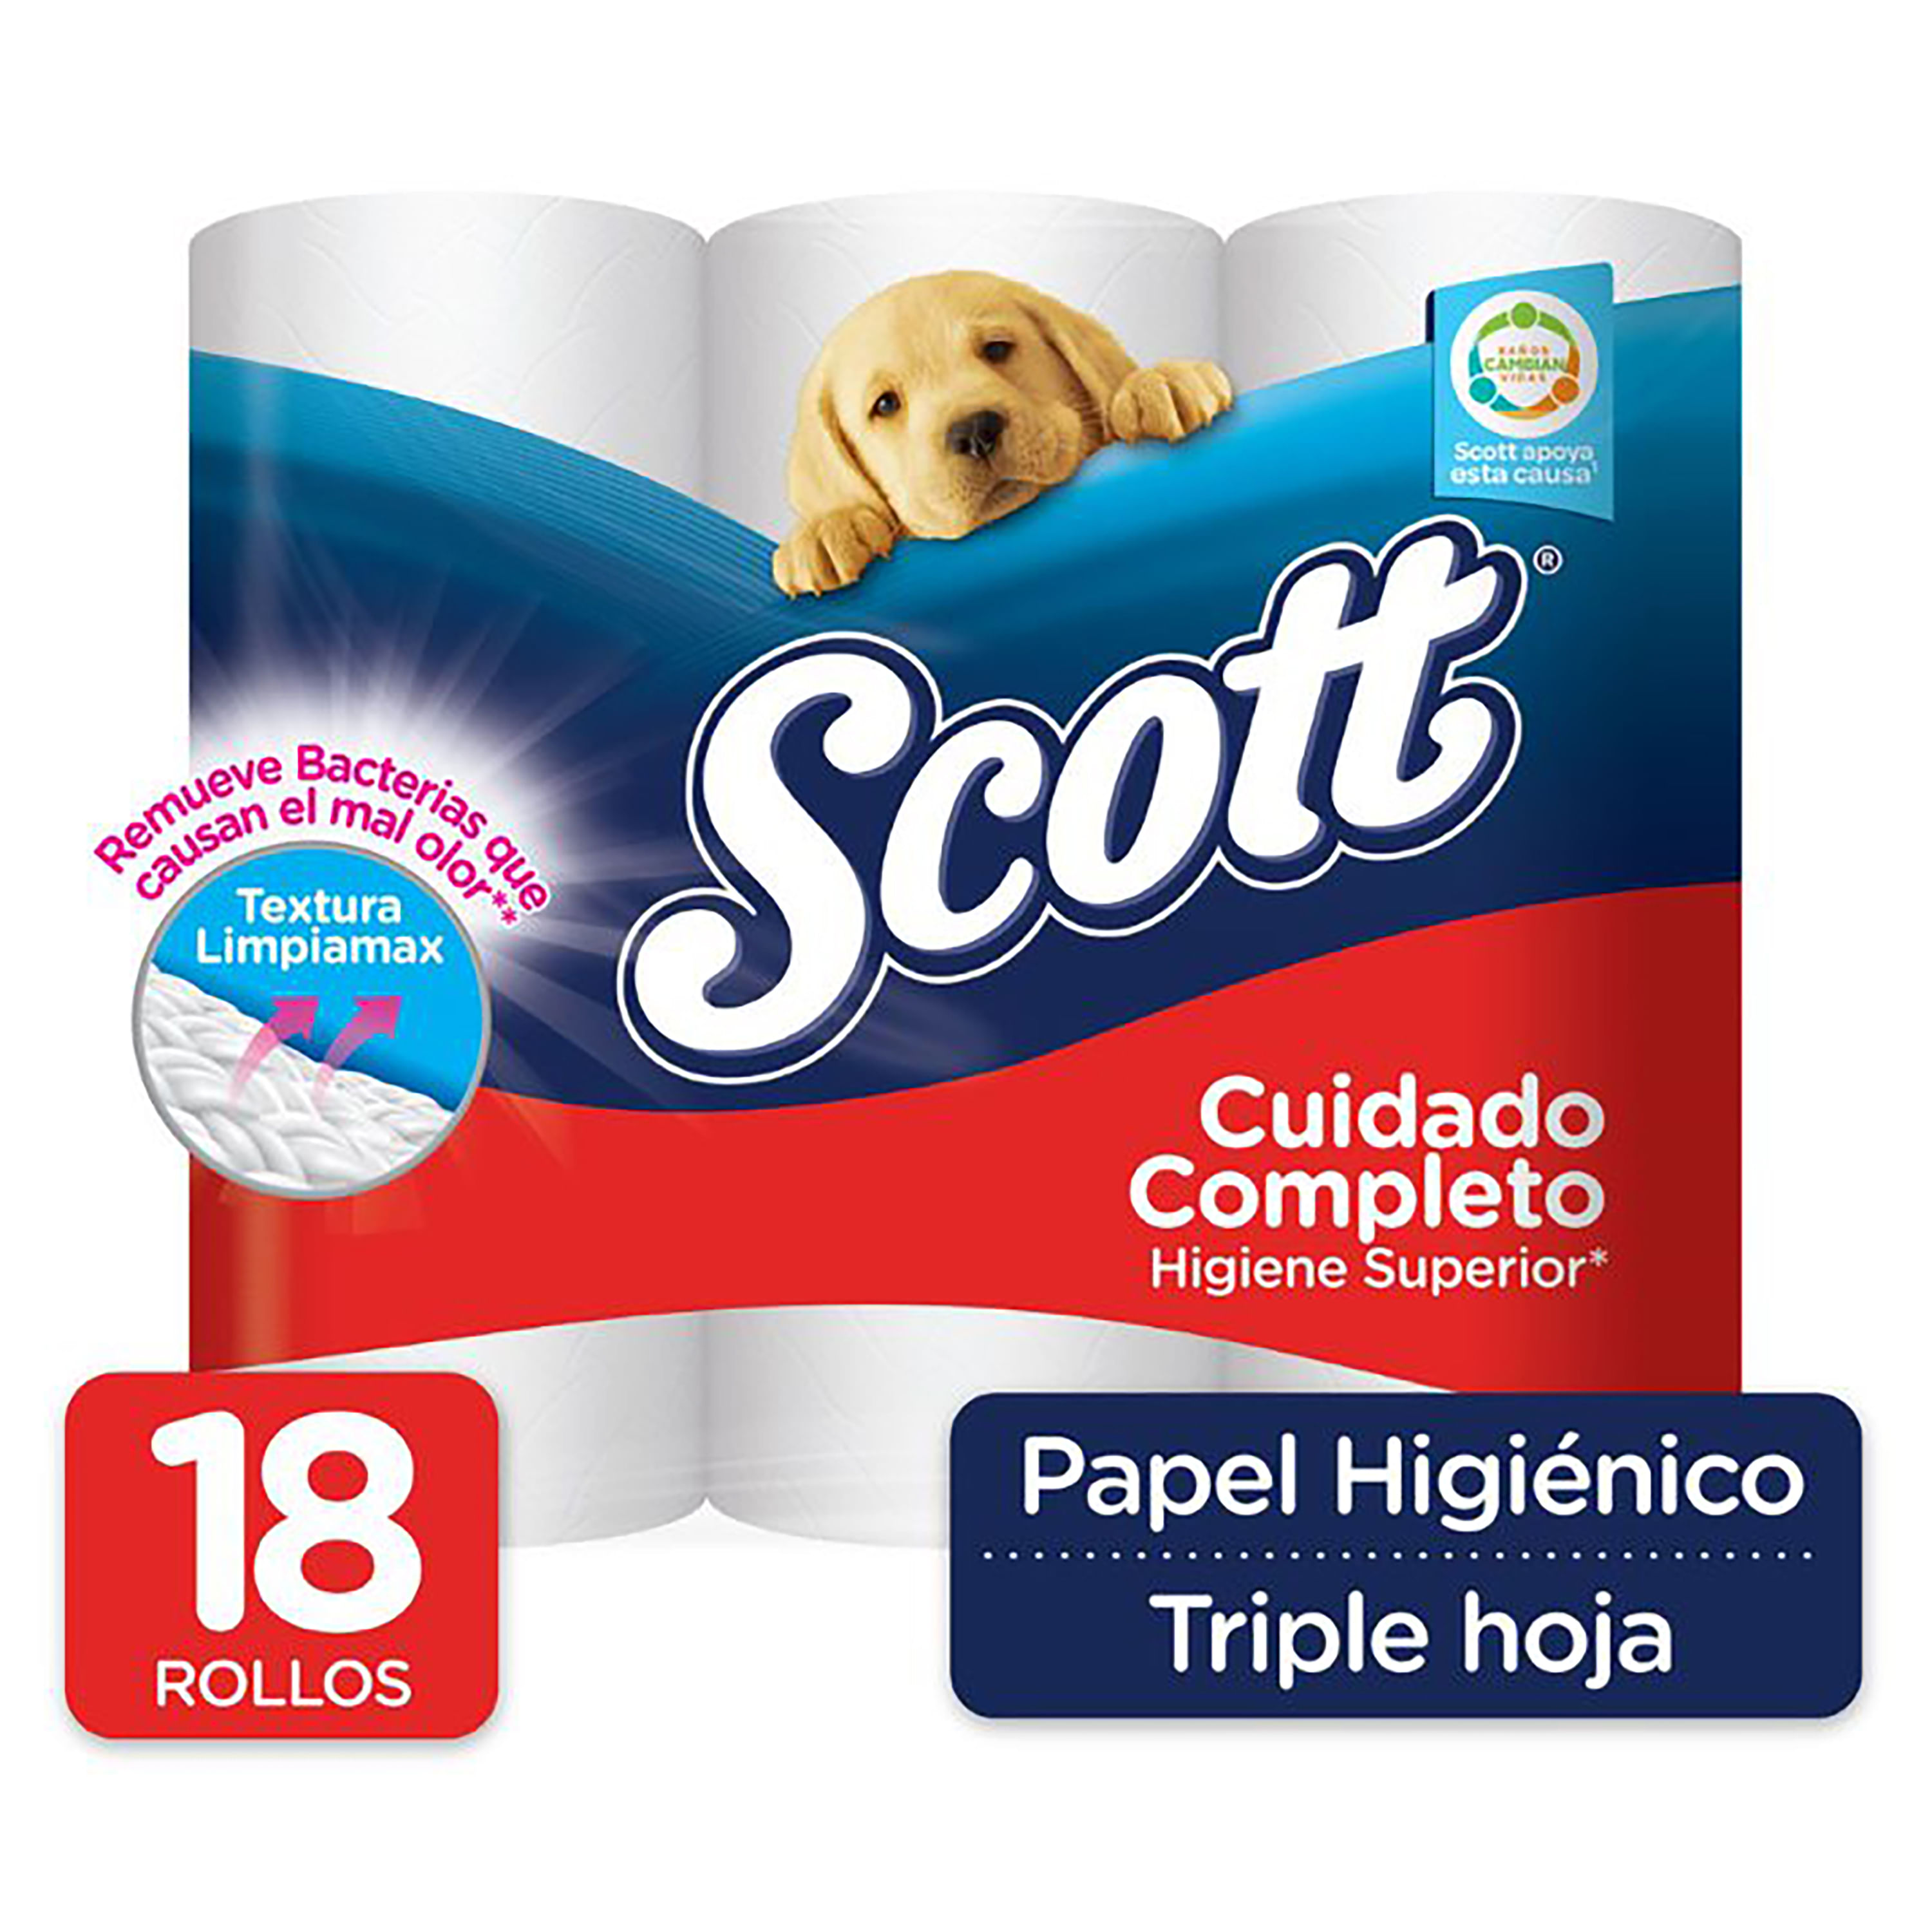 ▷ Chollo Pack x48 Rollos Papel higiénico Scottex Megarollo por sólo 23,98€  con descuento automático ¡Sólo 0,50€ por rollo!